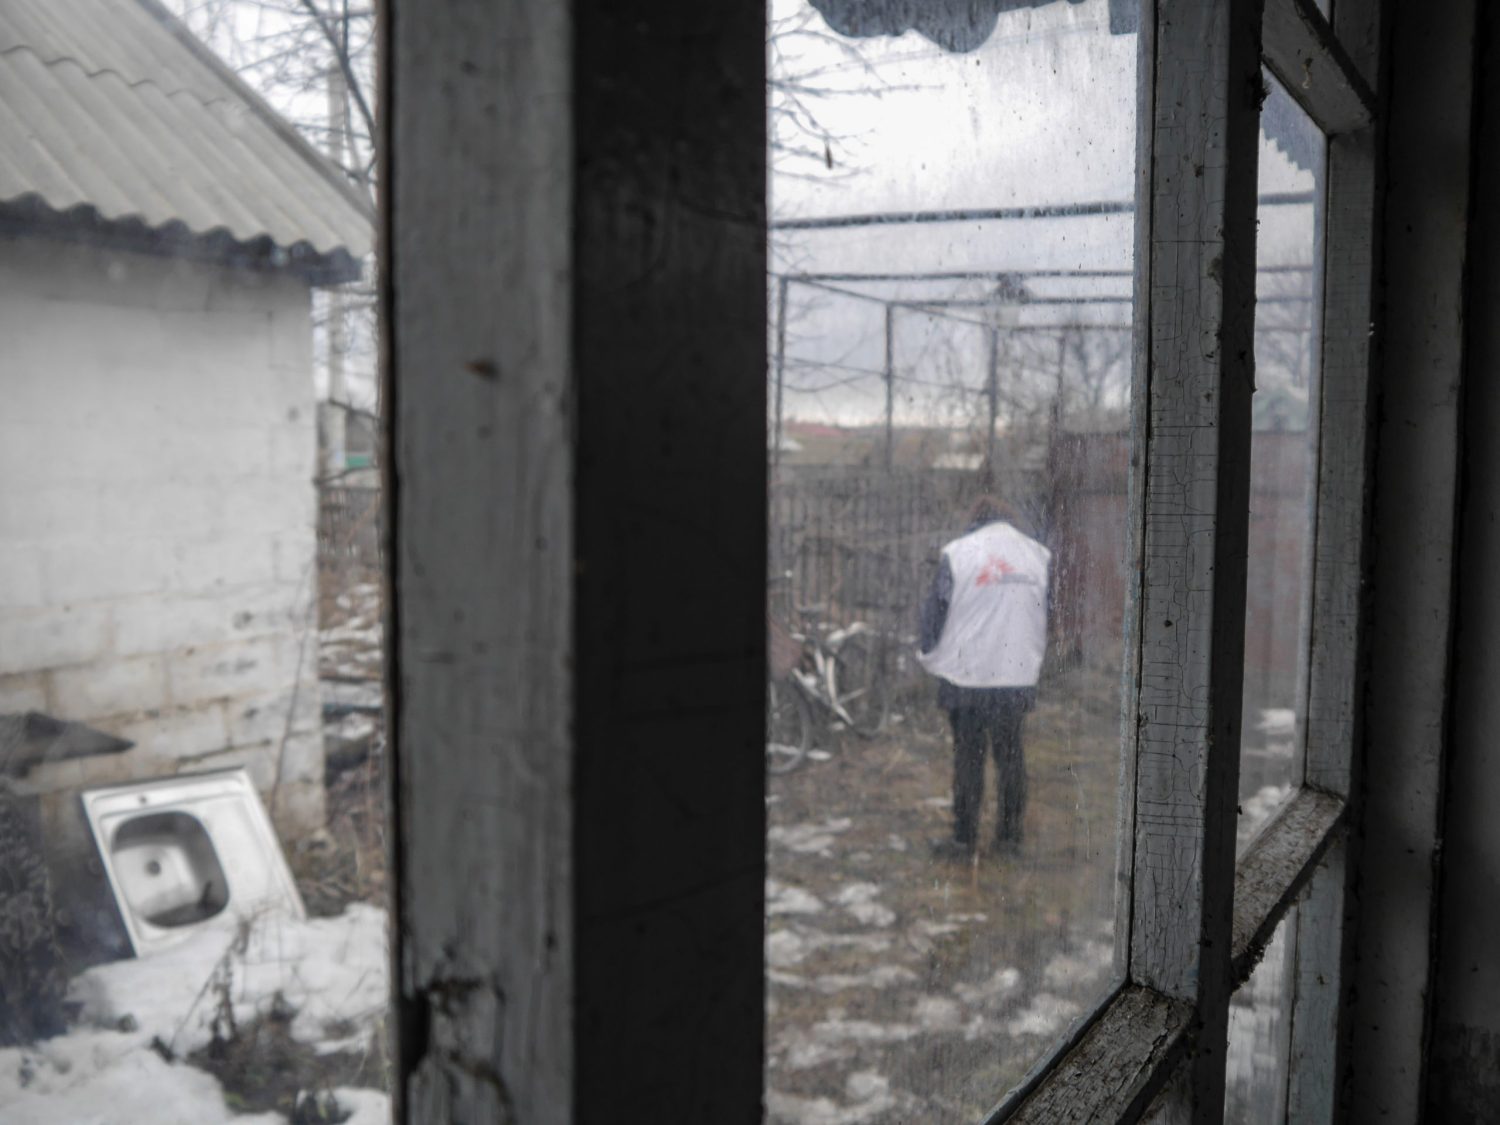 Foto de archivo: miembro de MSF afuera de una casa abandonada que funciona como clínica móvil en Vodiane, Ucrania (2019). Nico Dauterive.